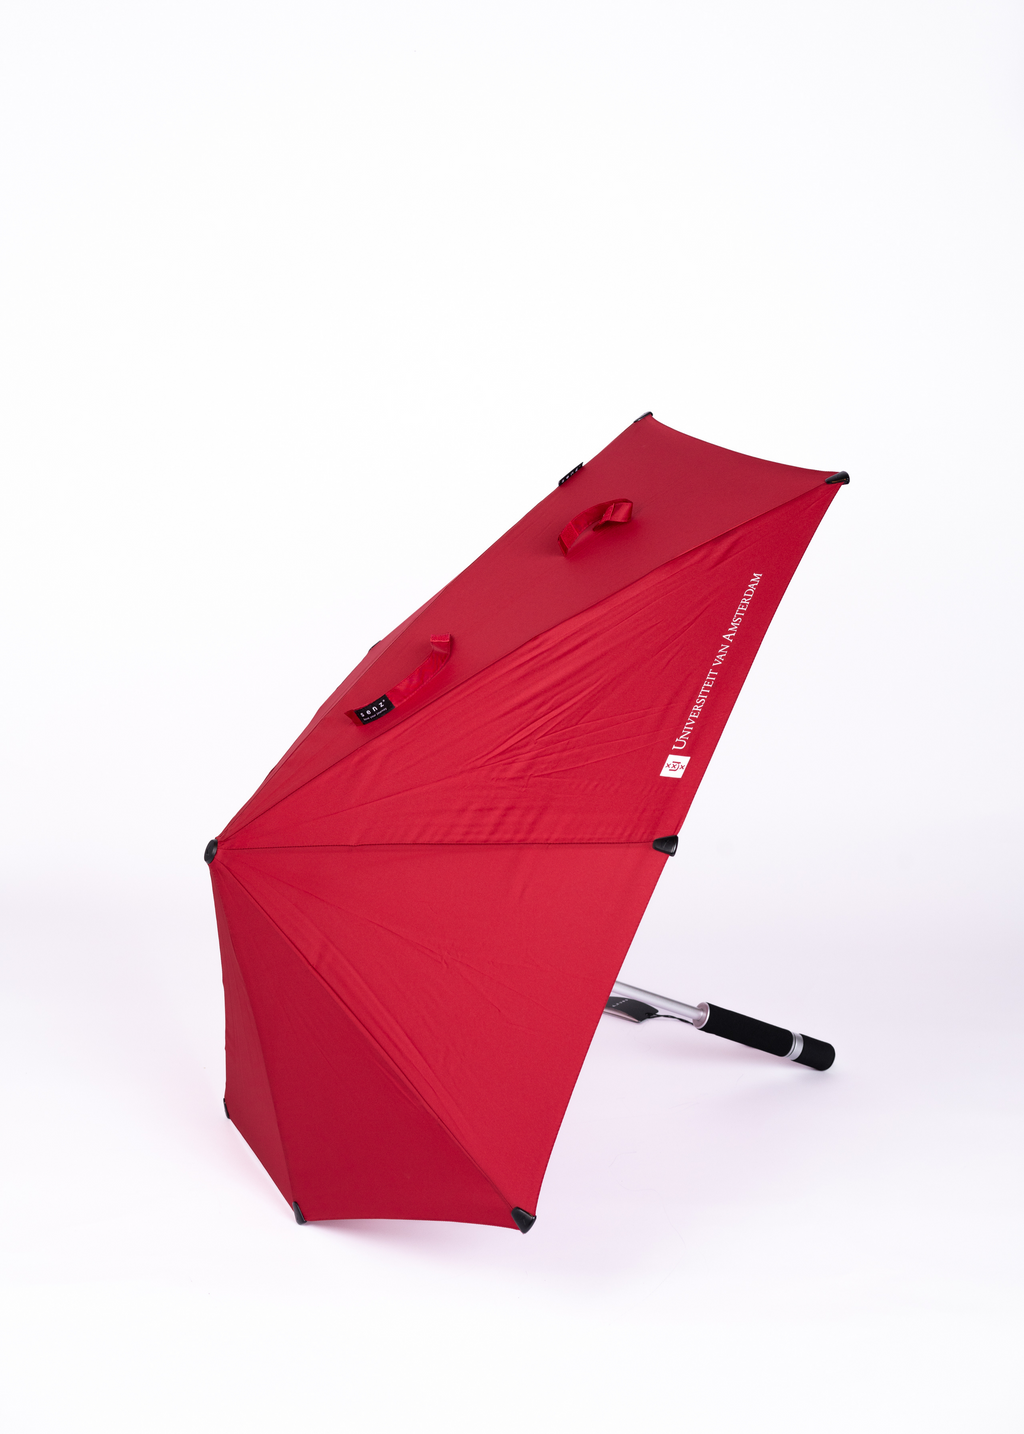 Storm paraplu by Senz met het Universiteit van Amsterdam logo rood